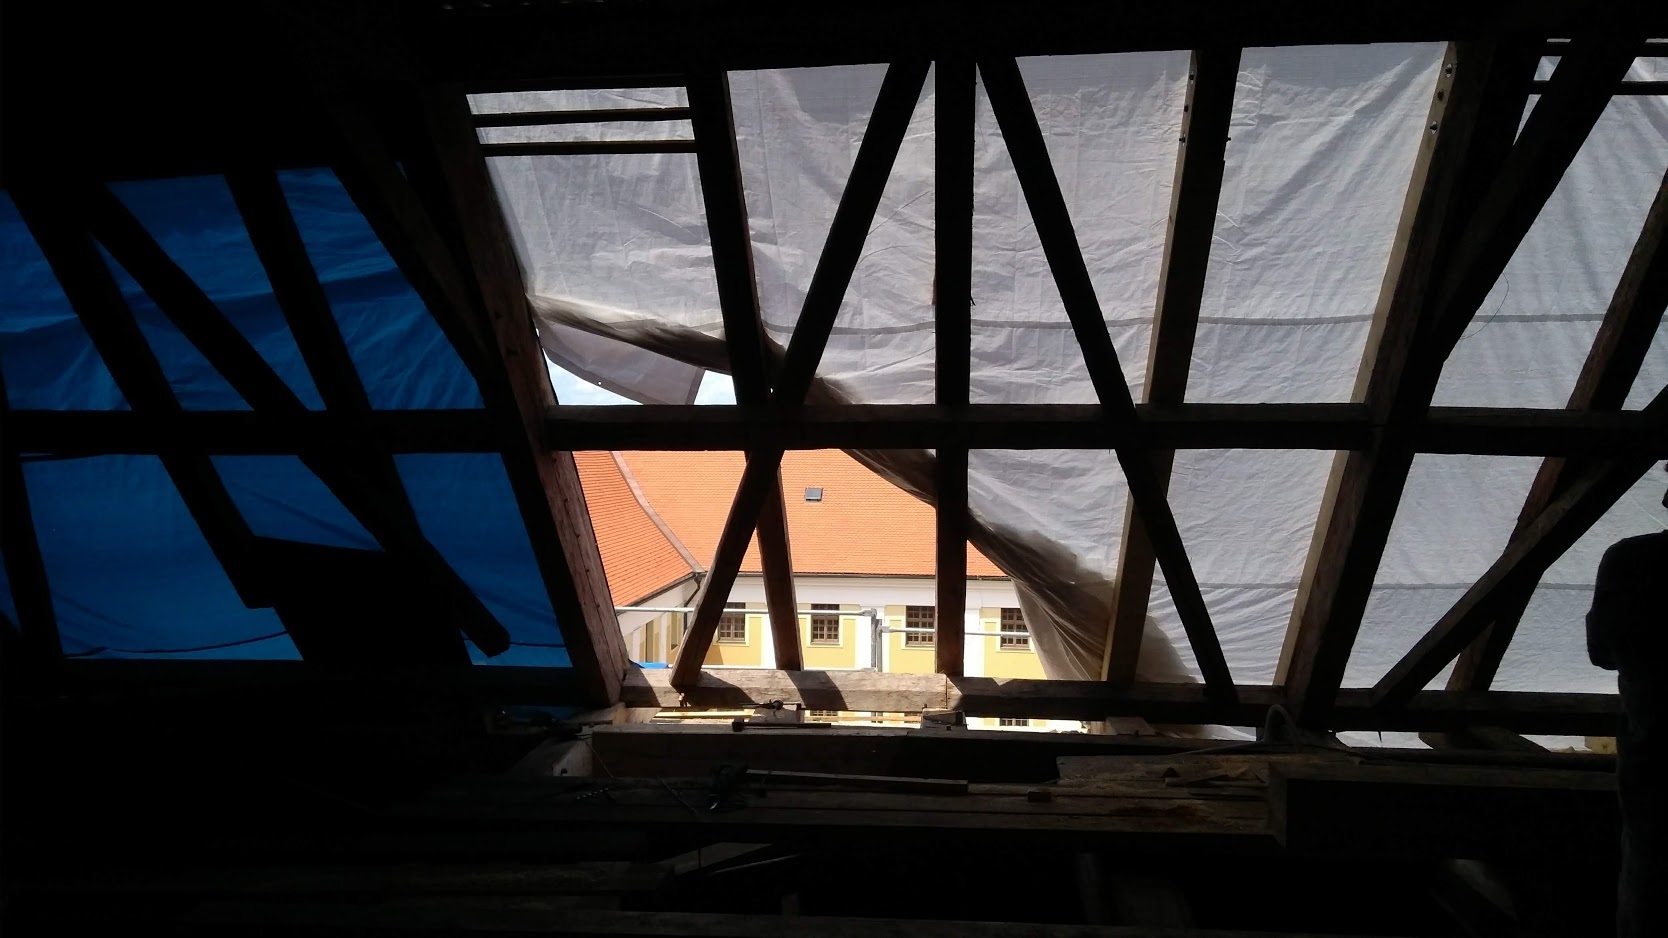 Rozsáhlá rekonstrukce střechy olomouckého muzea pokračuje zdroj foto: VMOL